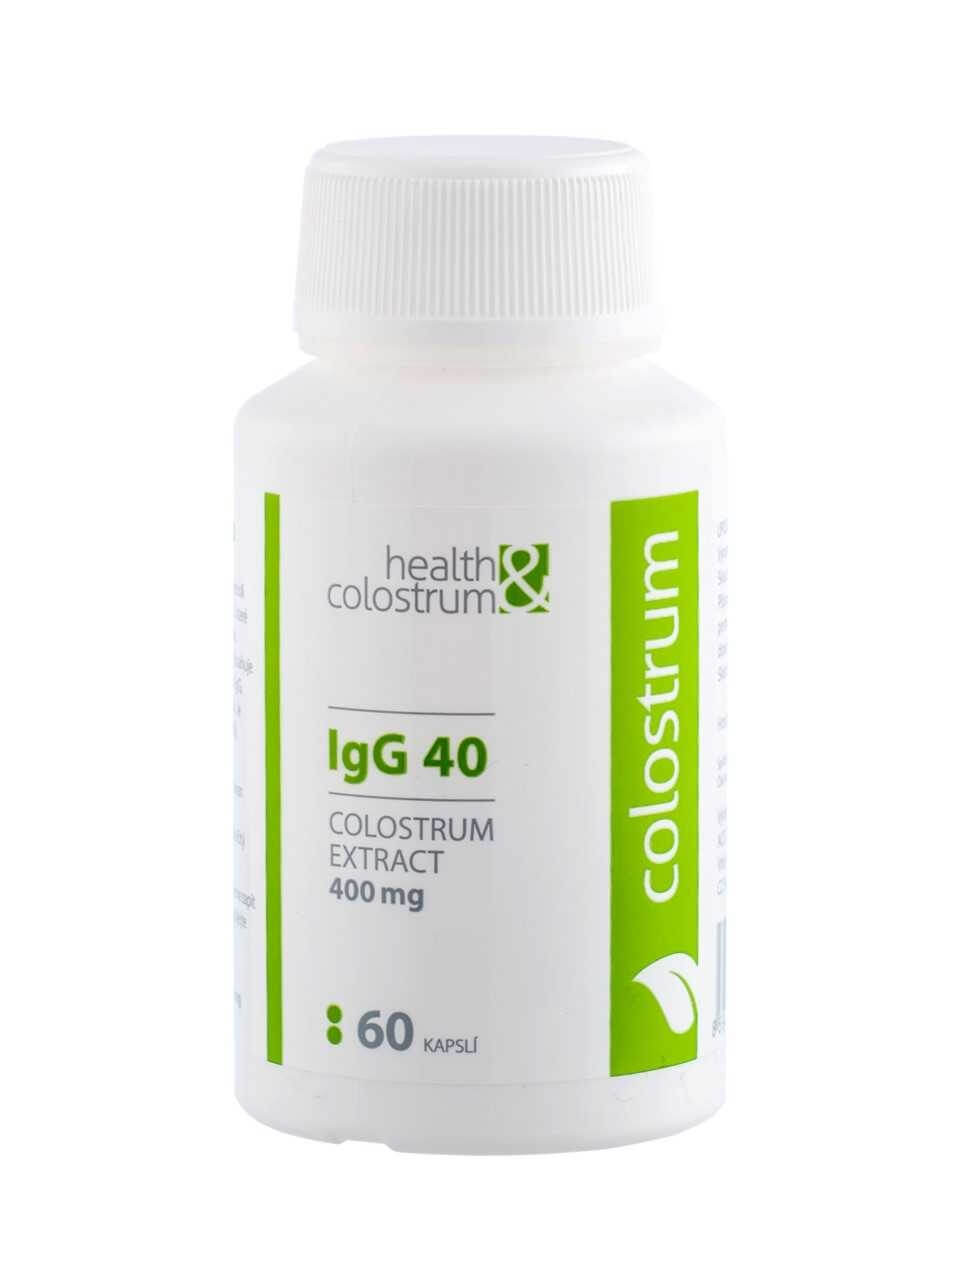 Zobrazit detail výrobku Health&colostrum Colostrum IgG 40 (400 mg) 60 kapslí + 2 měsíce na vrácení zboží